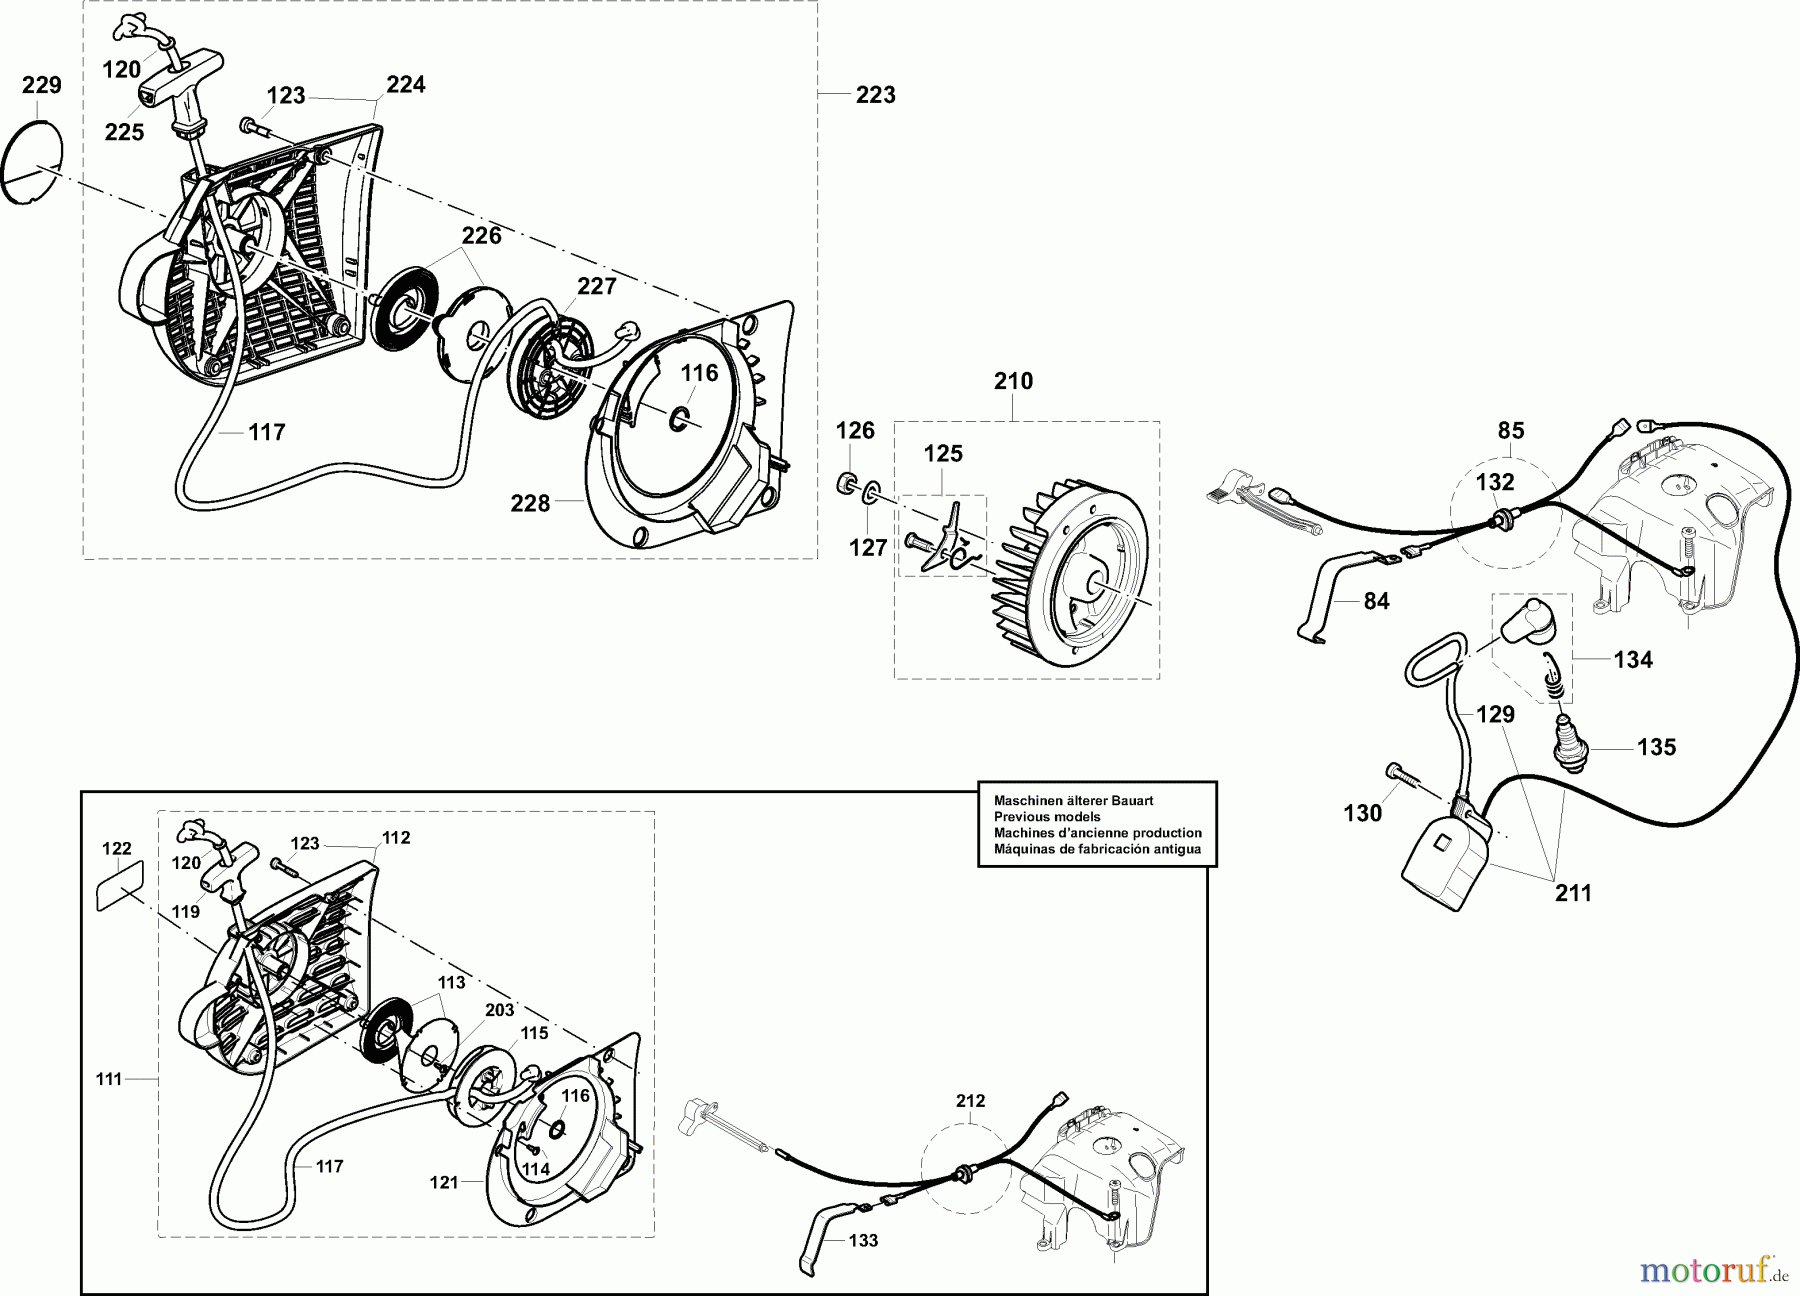  Dolmar Trennschleifer Benzin PC-7314 CD 5  Anwerfvorrichtung, Magnetzünder